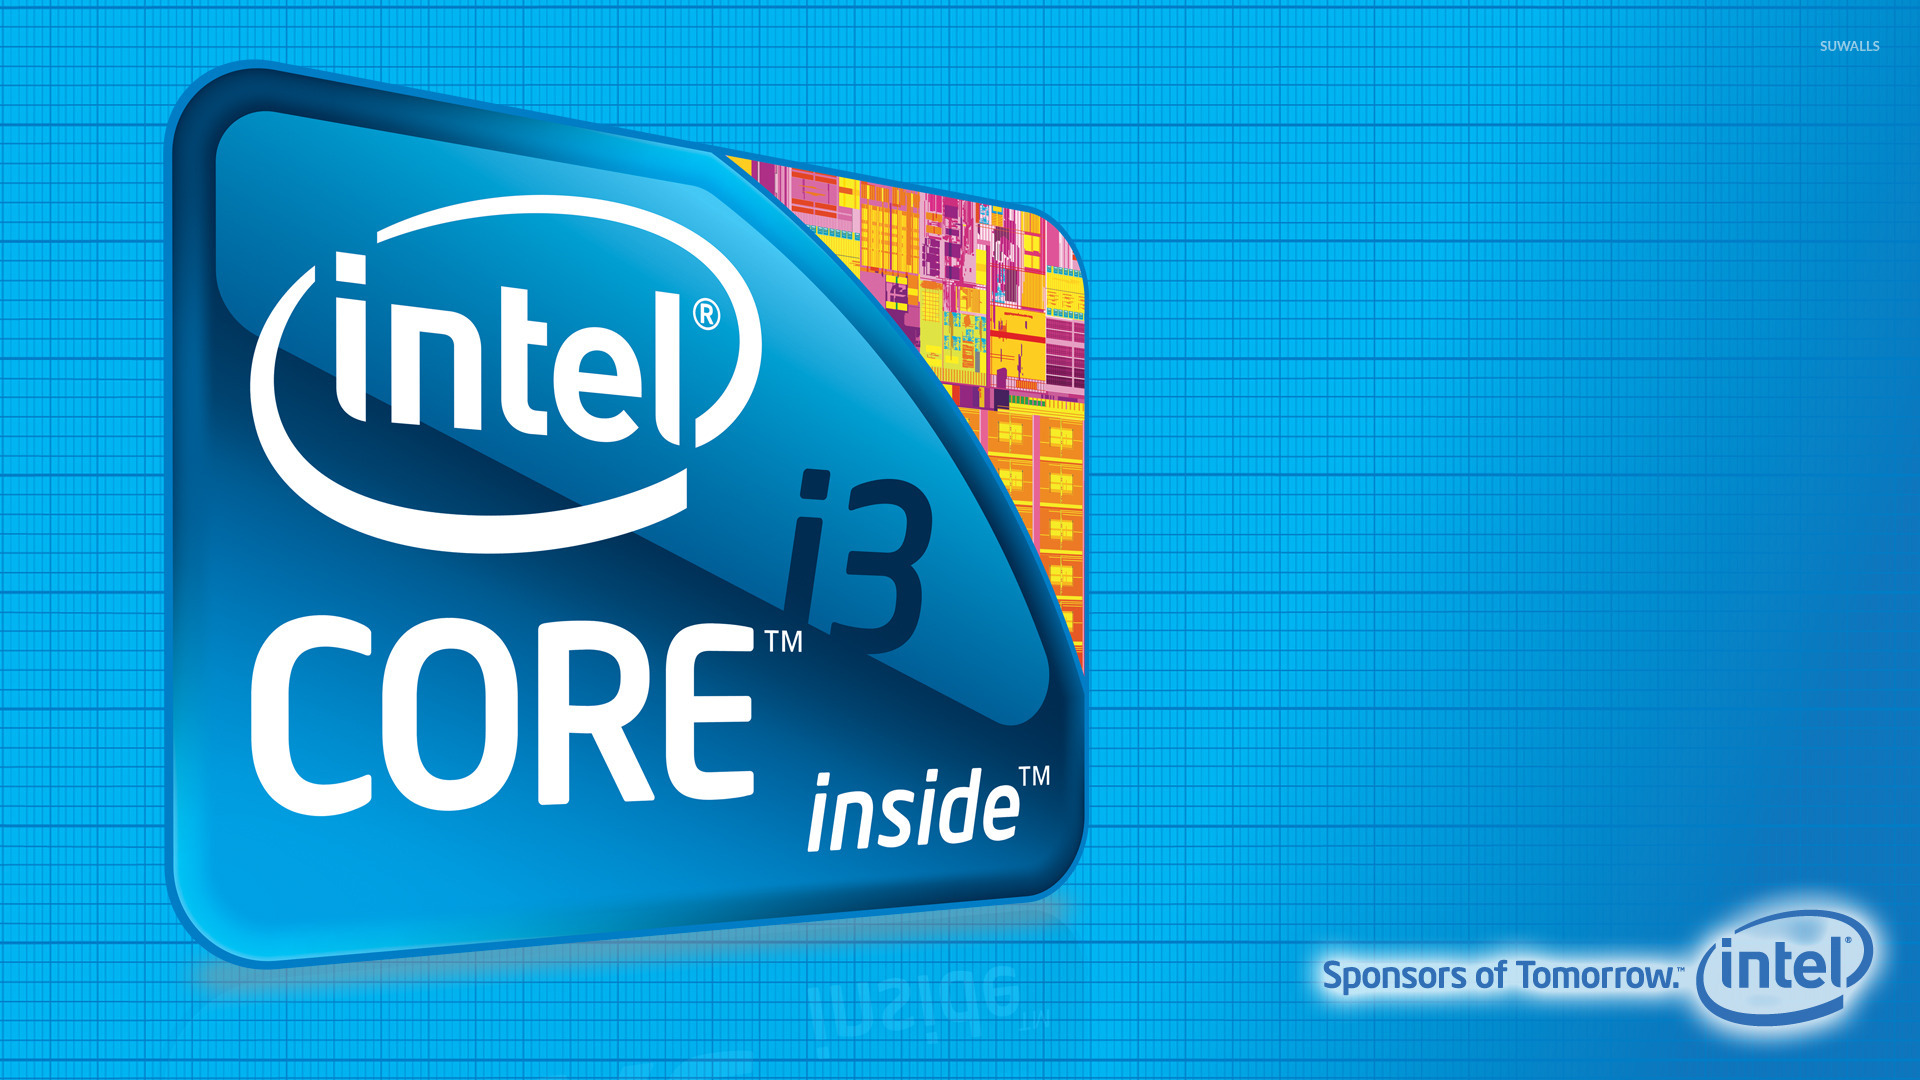 Intel Core i3 wallpaper   Computer wallpapers   27650